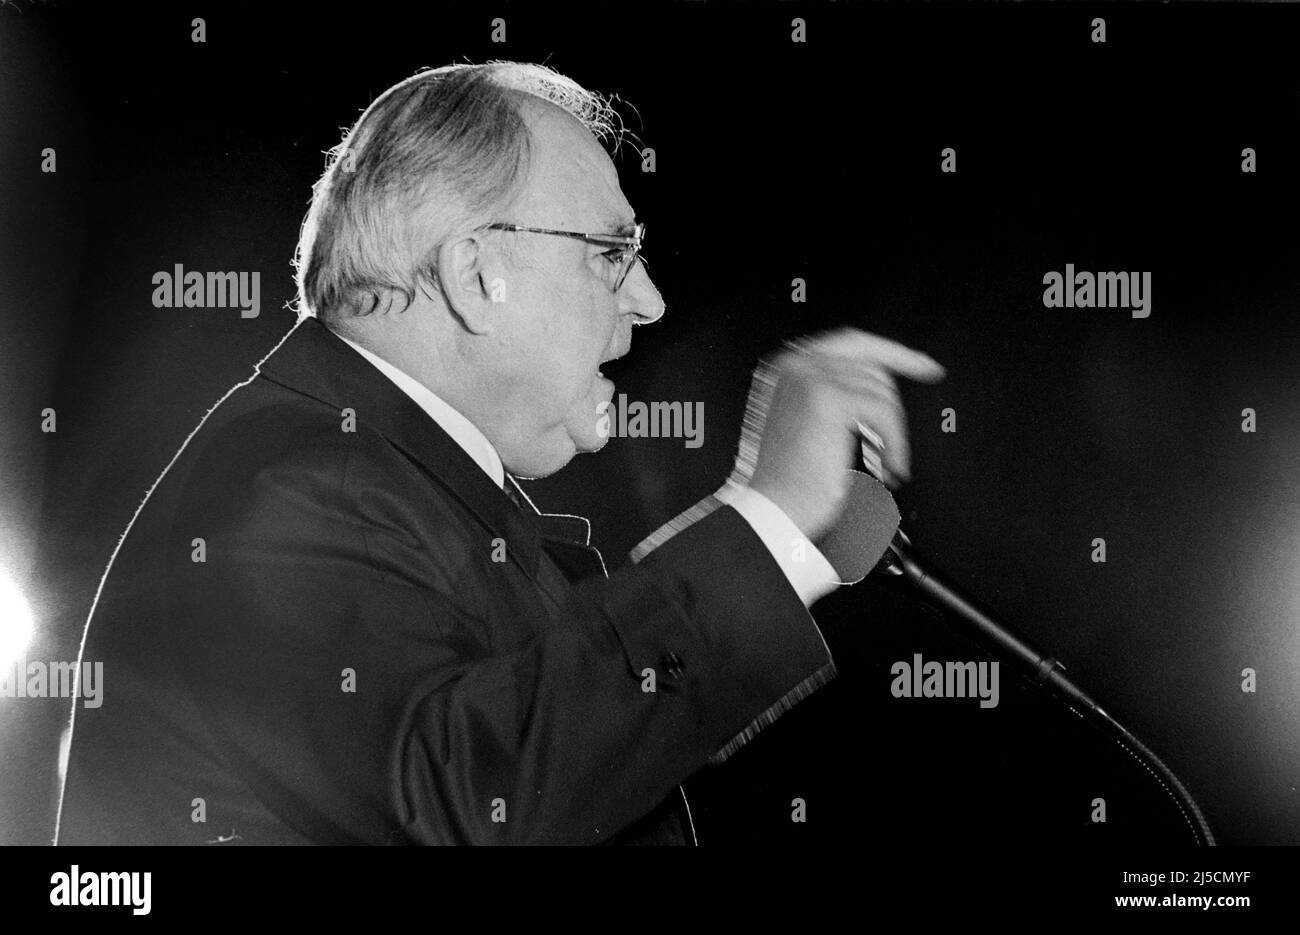 Erfurt, DEU, 20.02.1990 - le chancelier Helmut Kohl parle à la Domplatz d'Erfurt. Il s'agissait de la première campagne de Kohl dans la RDA. [traduction automatique] Banque D'Images